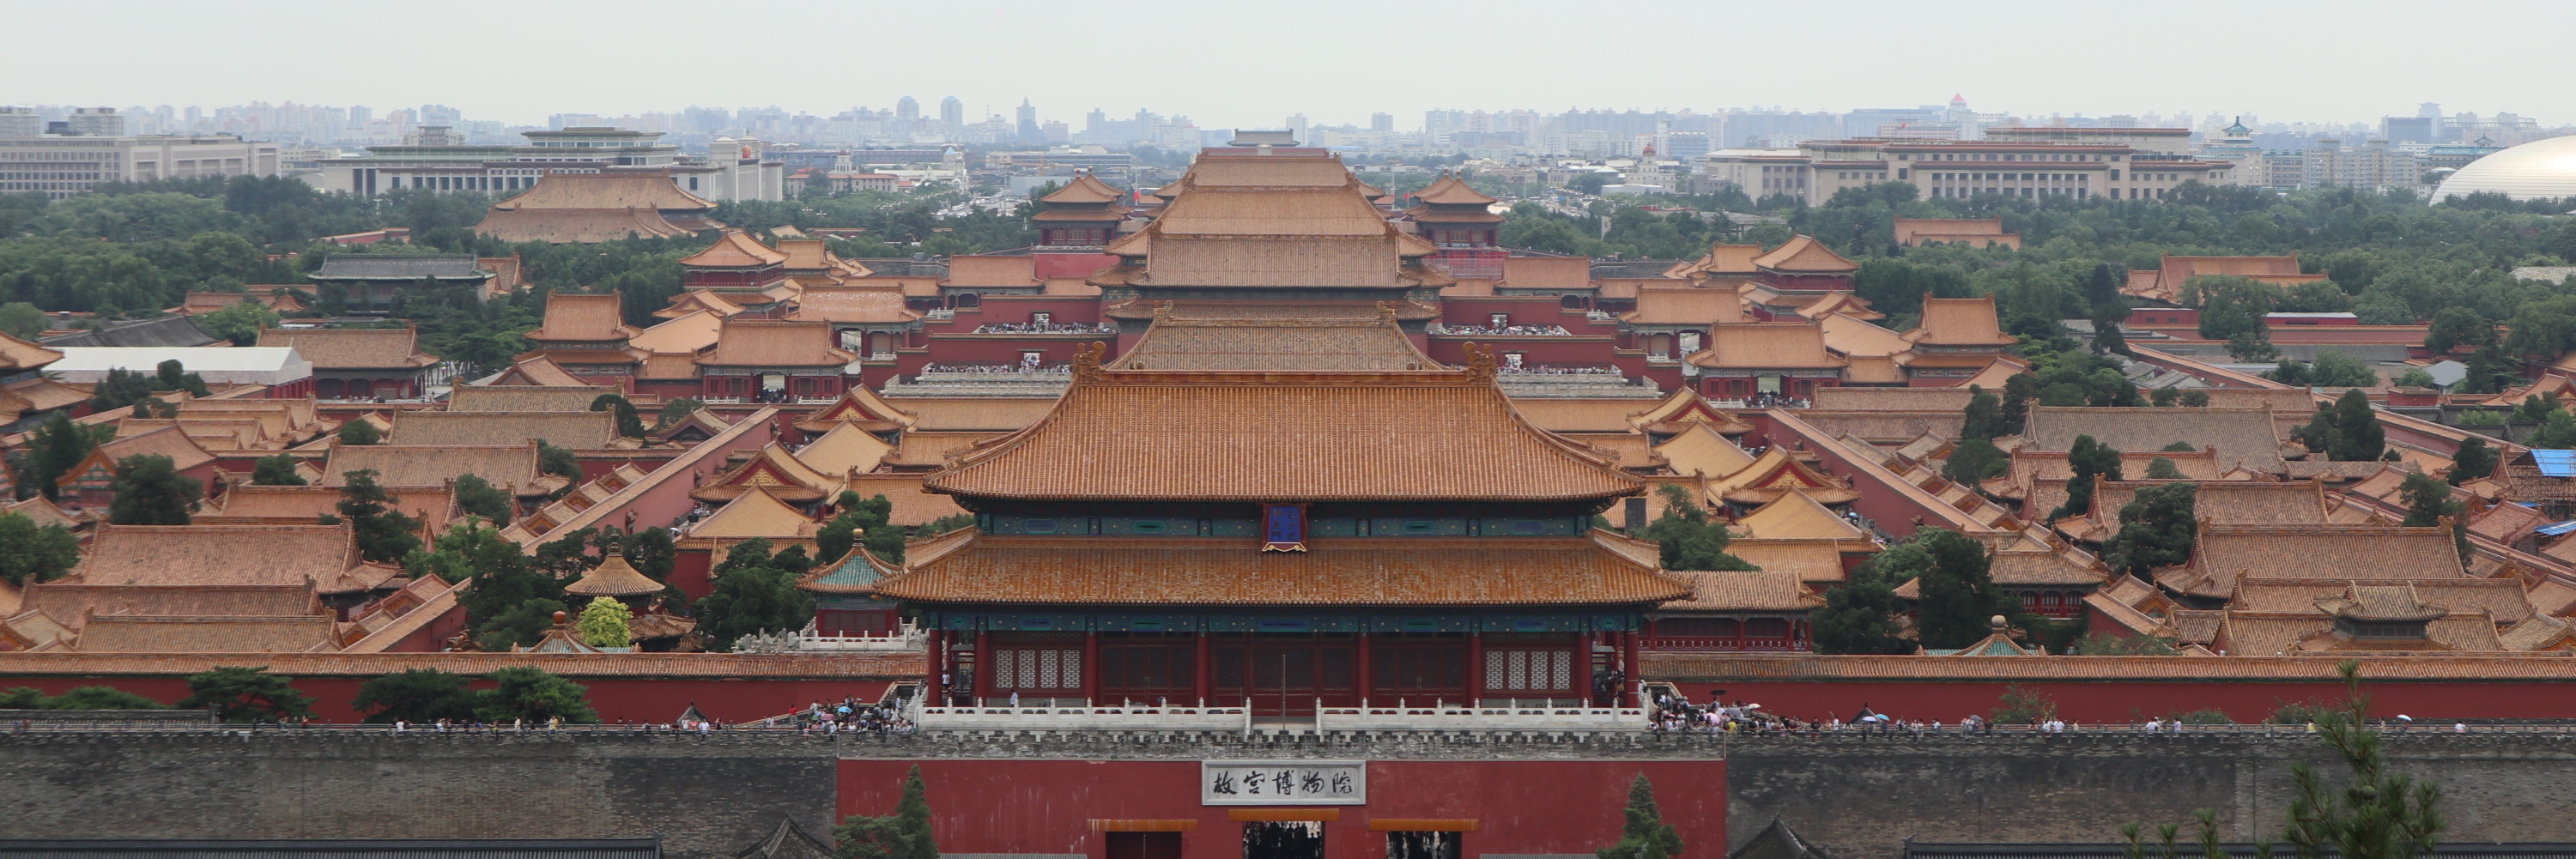 突然想看看故宫的全景——景山公园(万春亭),北京旅游